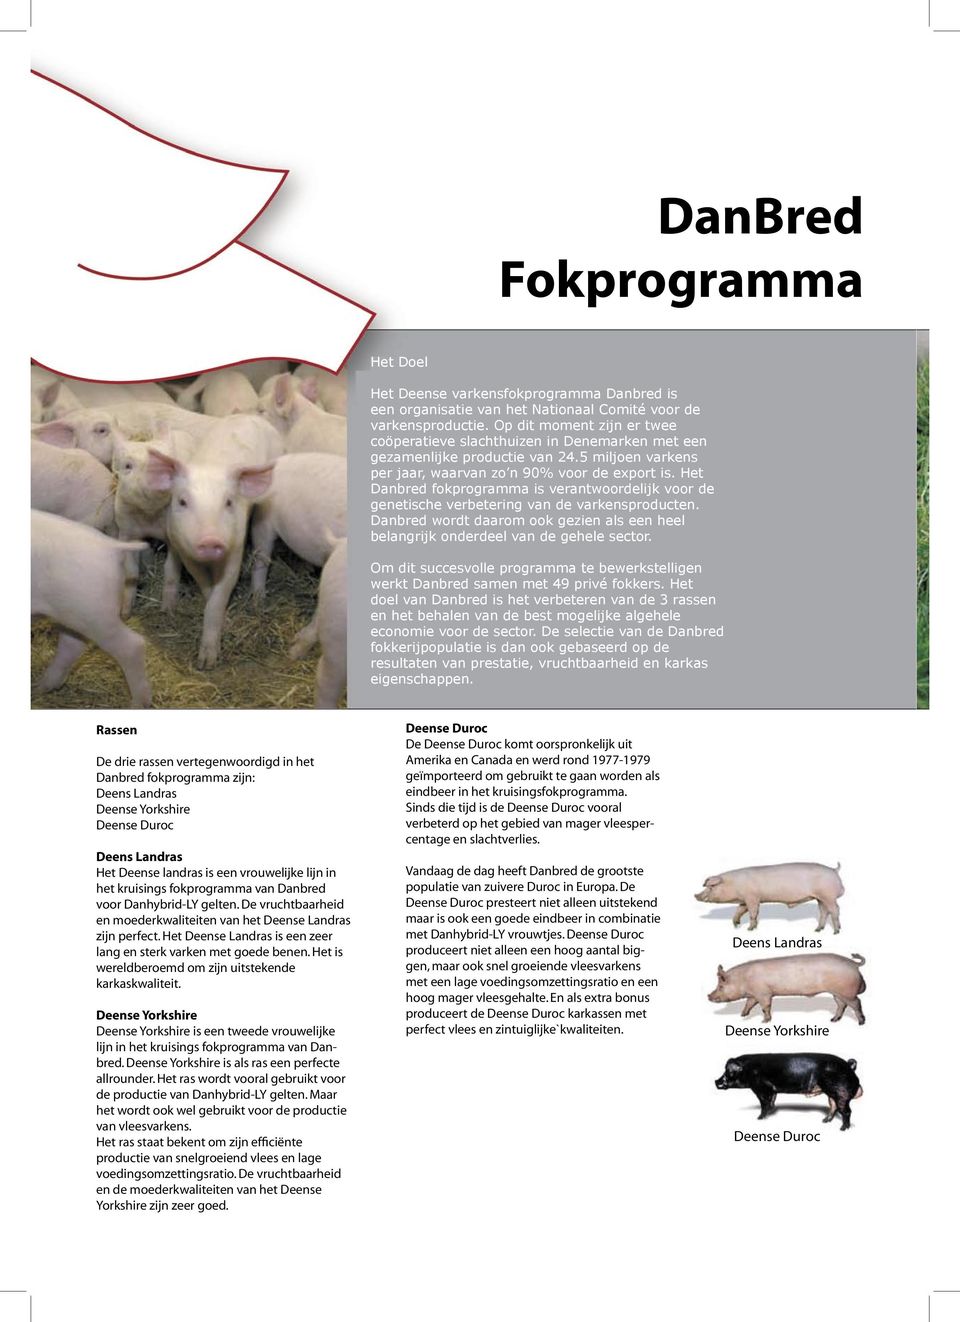 Het Danbred fokprogramma is verantwoordelijk voor de genetische verbetering van de varkensproducten. Danbred wordt daarom ook gezien als een heel belangrijk onderdeel van de gehele sector.